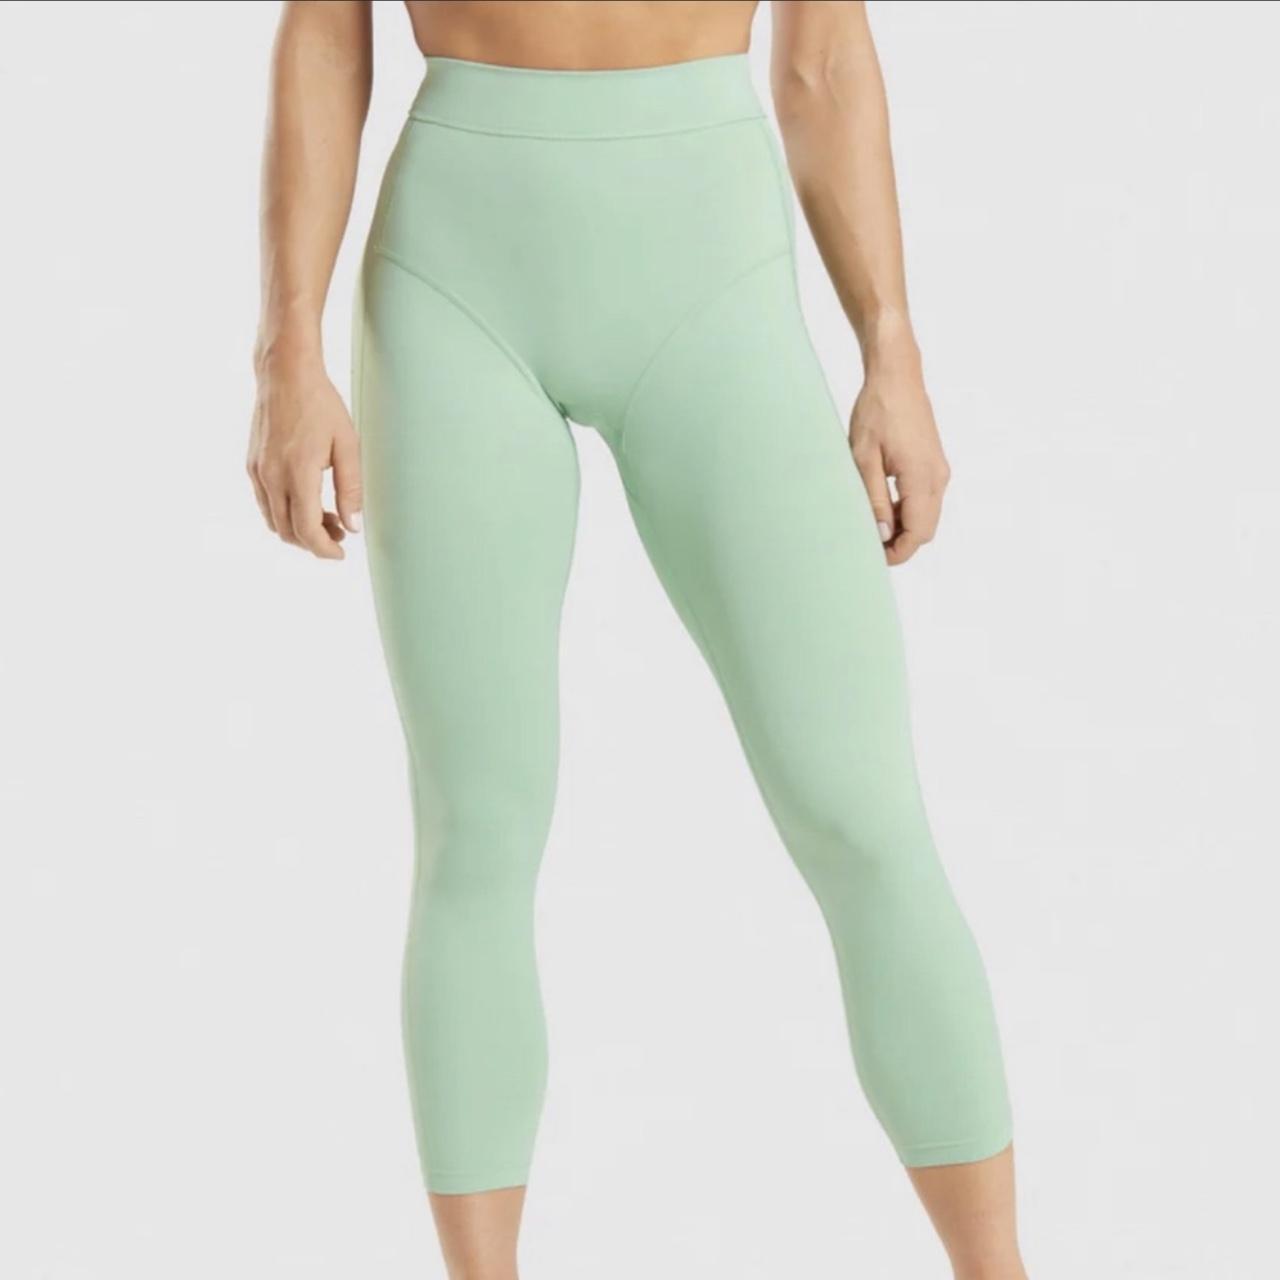 Light green gymshark leggings. Size medium. Only - Depop